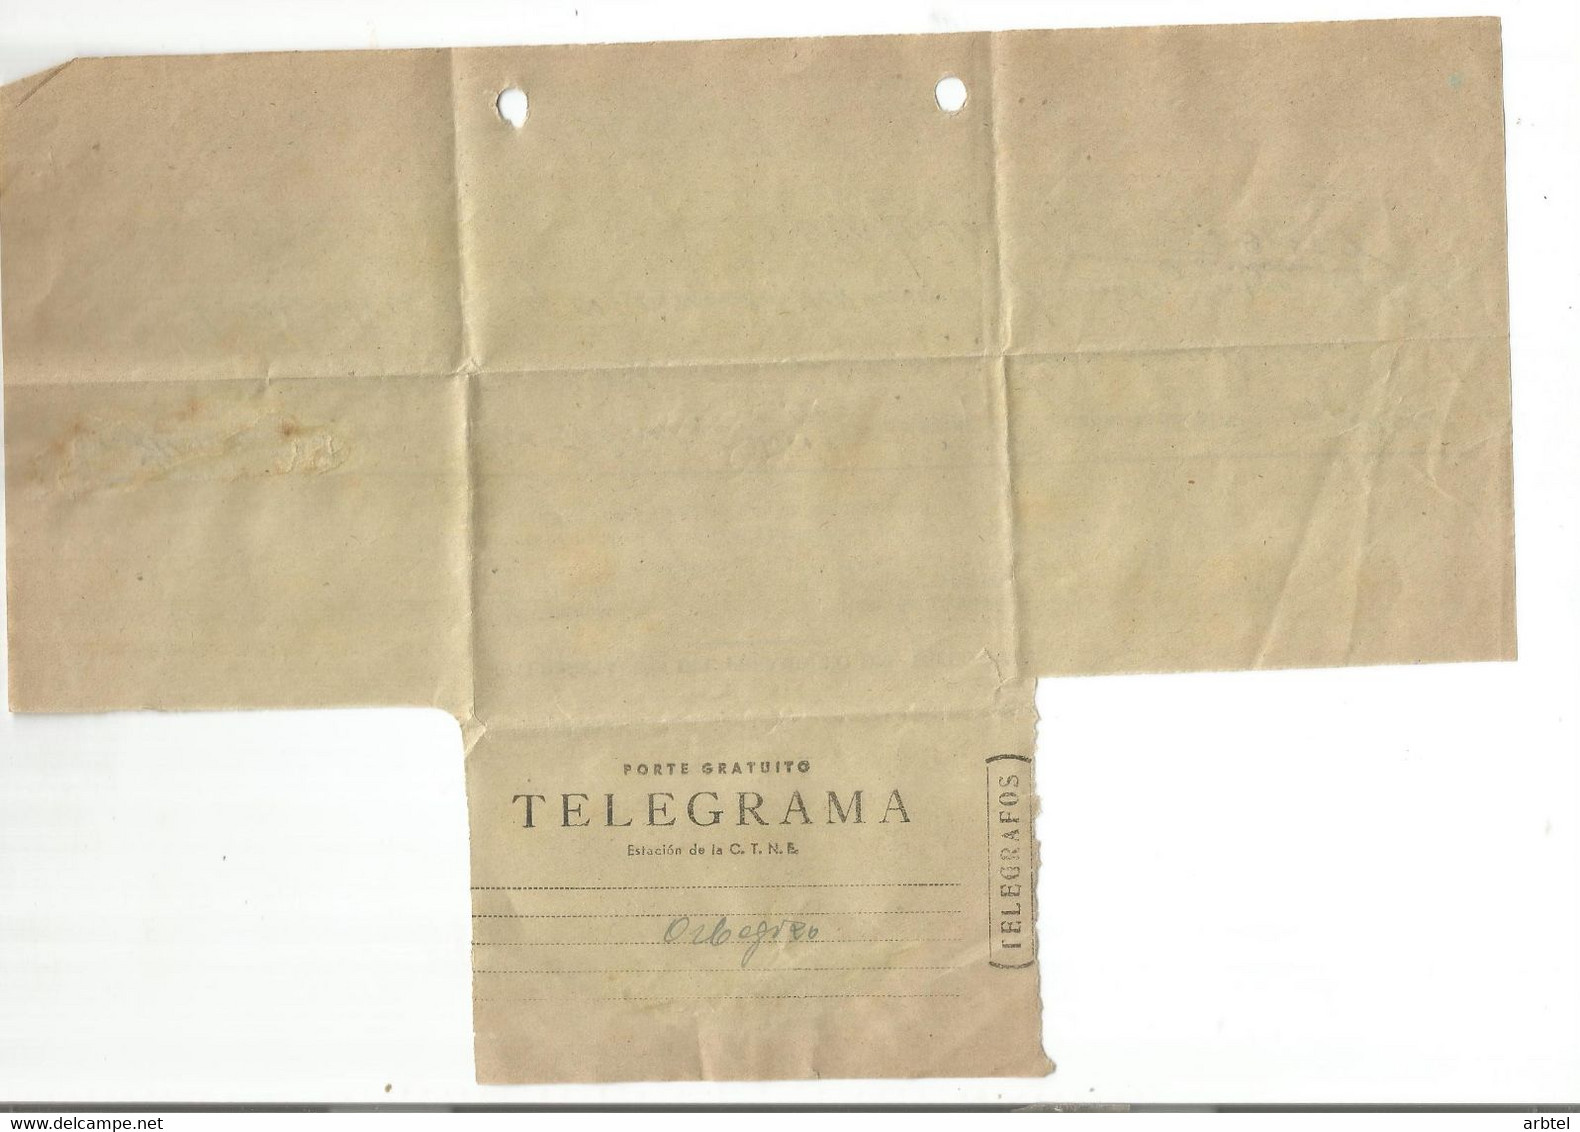 TELEGRAMA DE LAS PALMAS A ZUMARRAGA - Telegraph